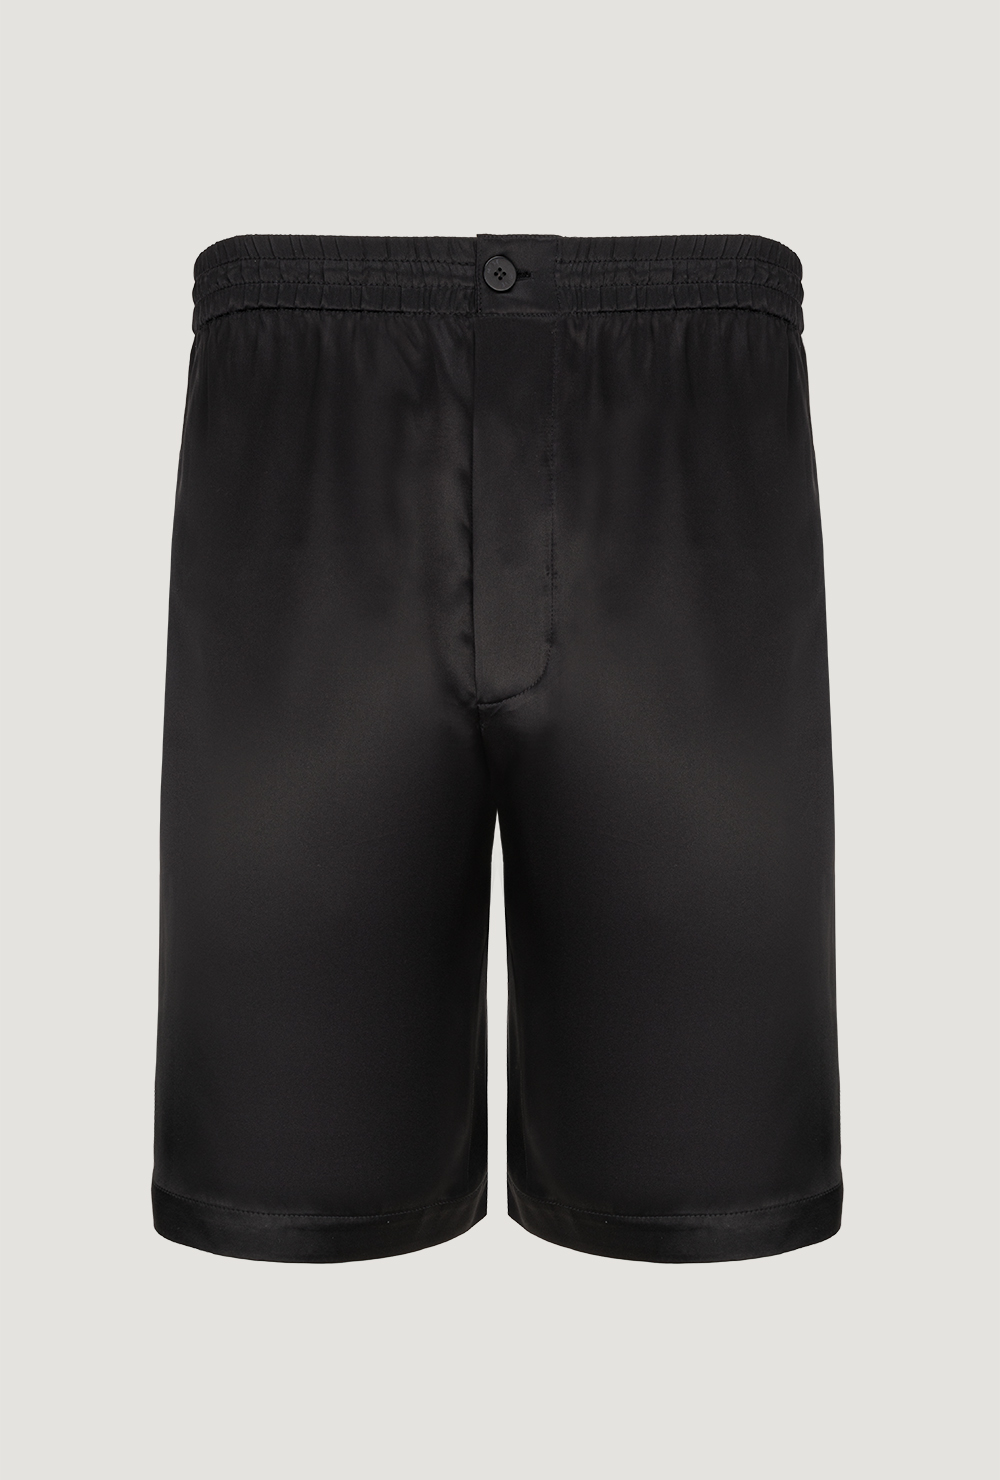 Silk men's shorts made of black satin Męskie jedwabne szorty z czarnej satyny